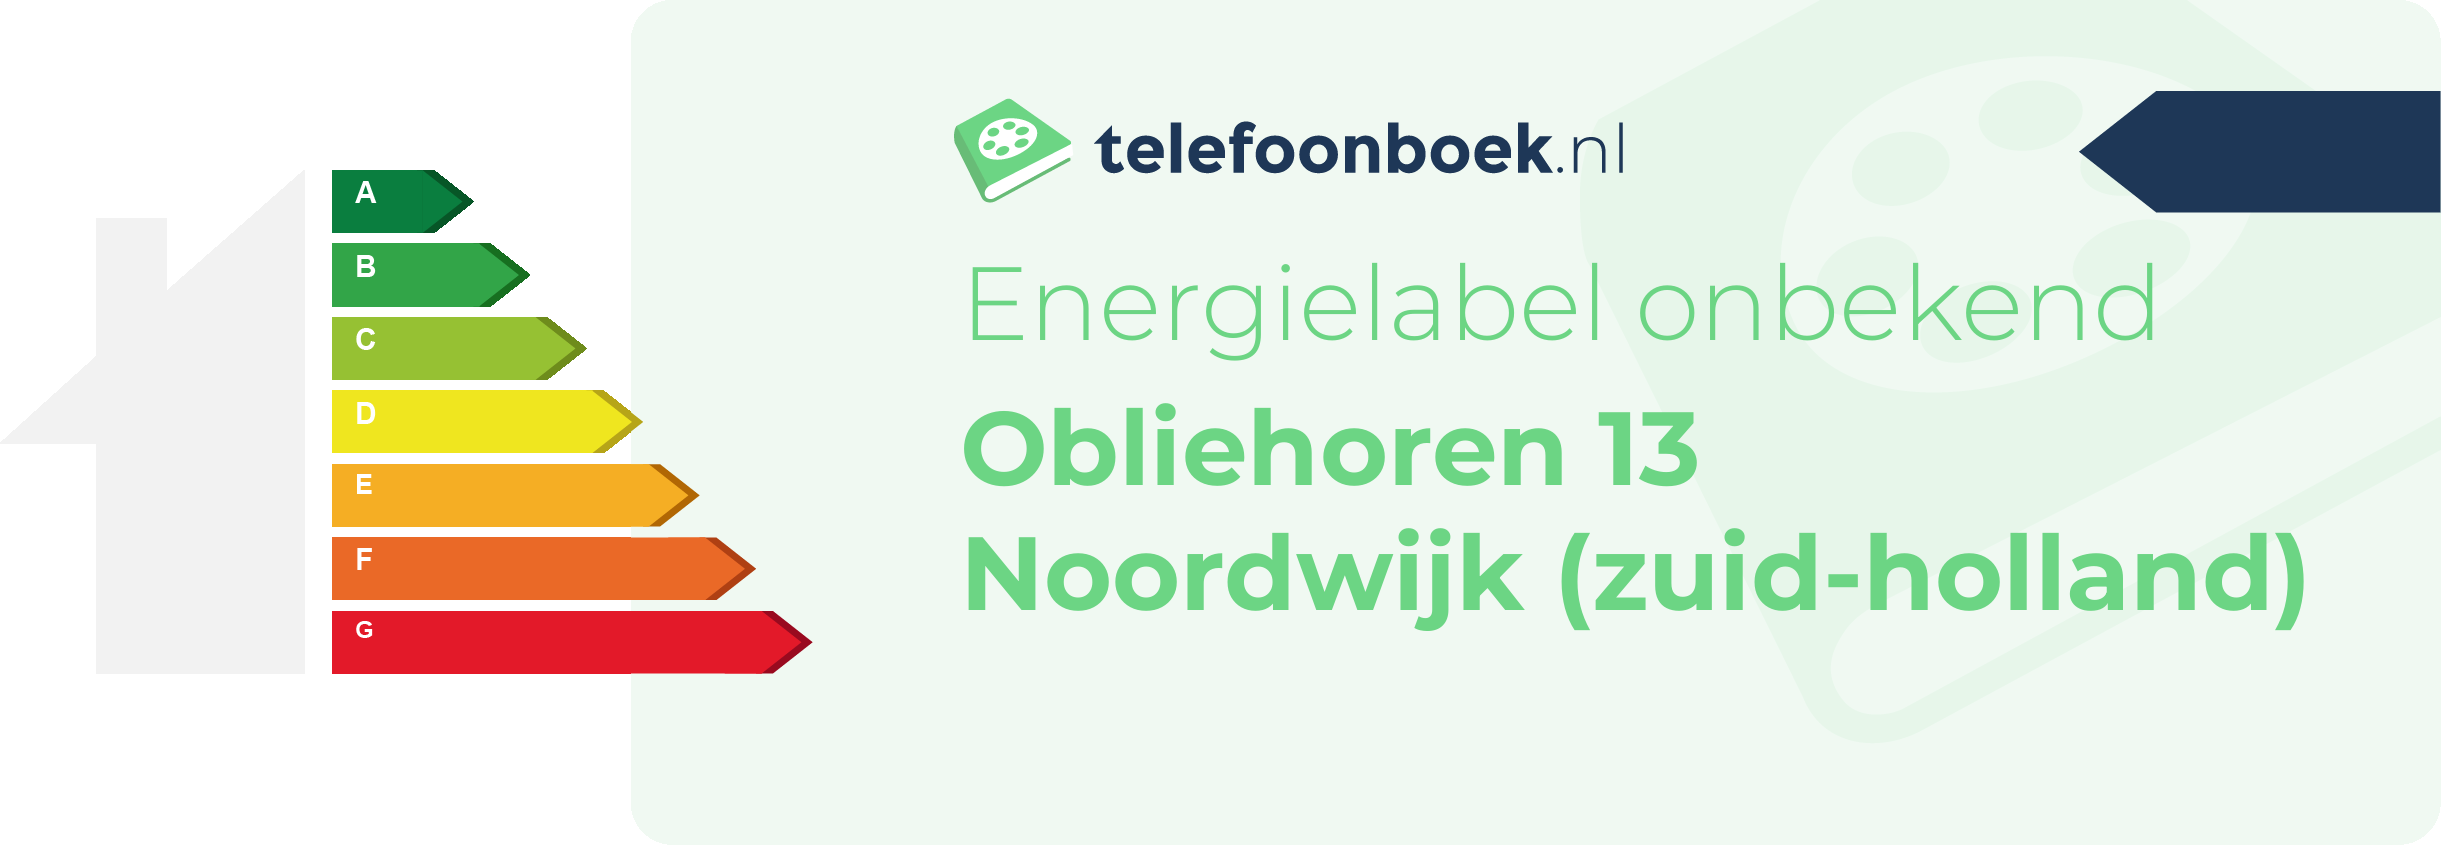 Energielabel Obliehoren 13 Noordwijk (Zuid-Holland)